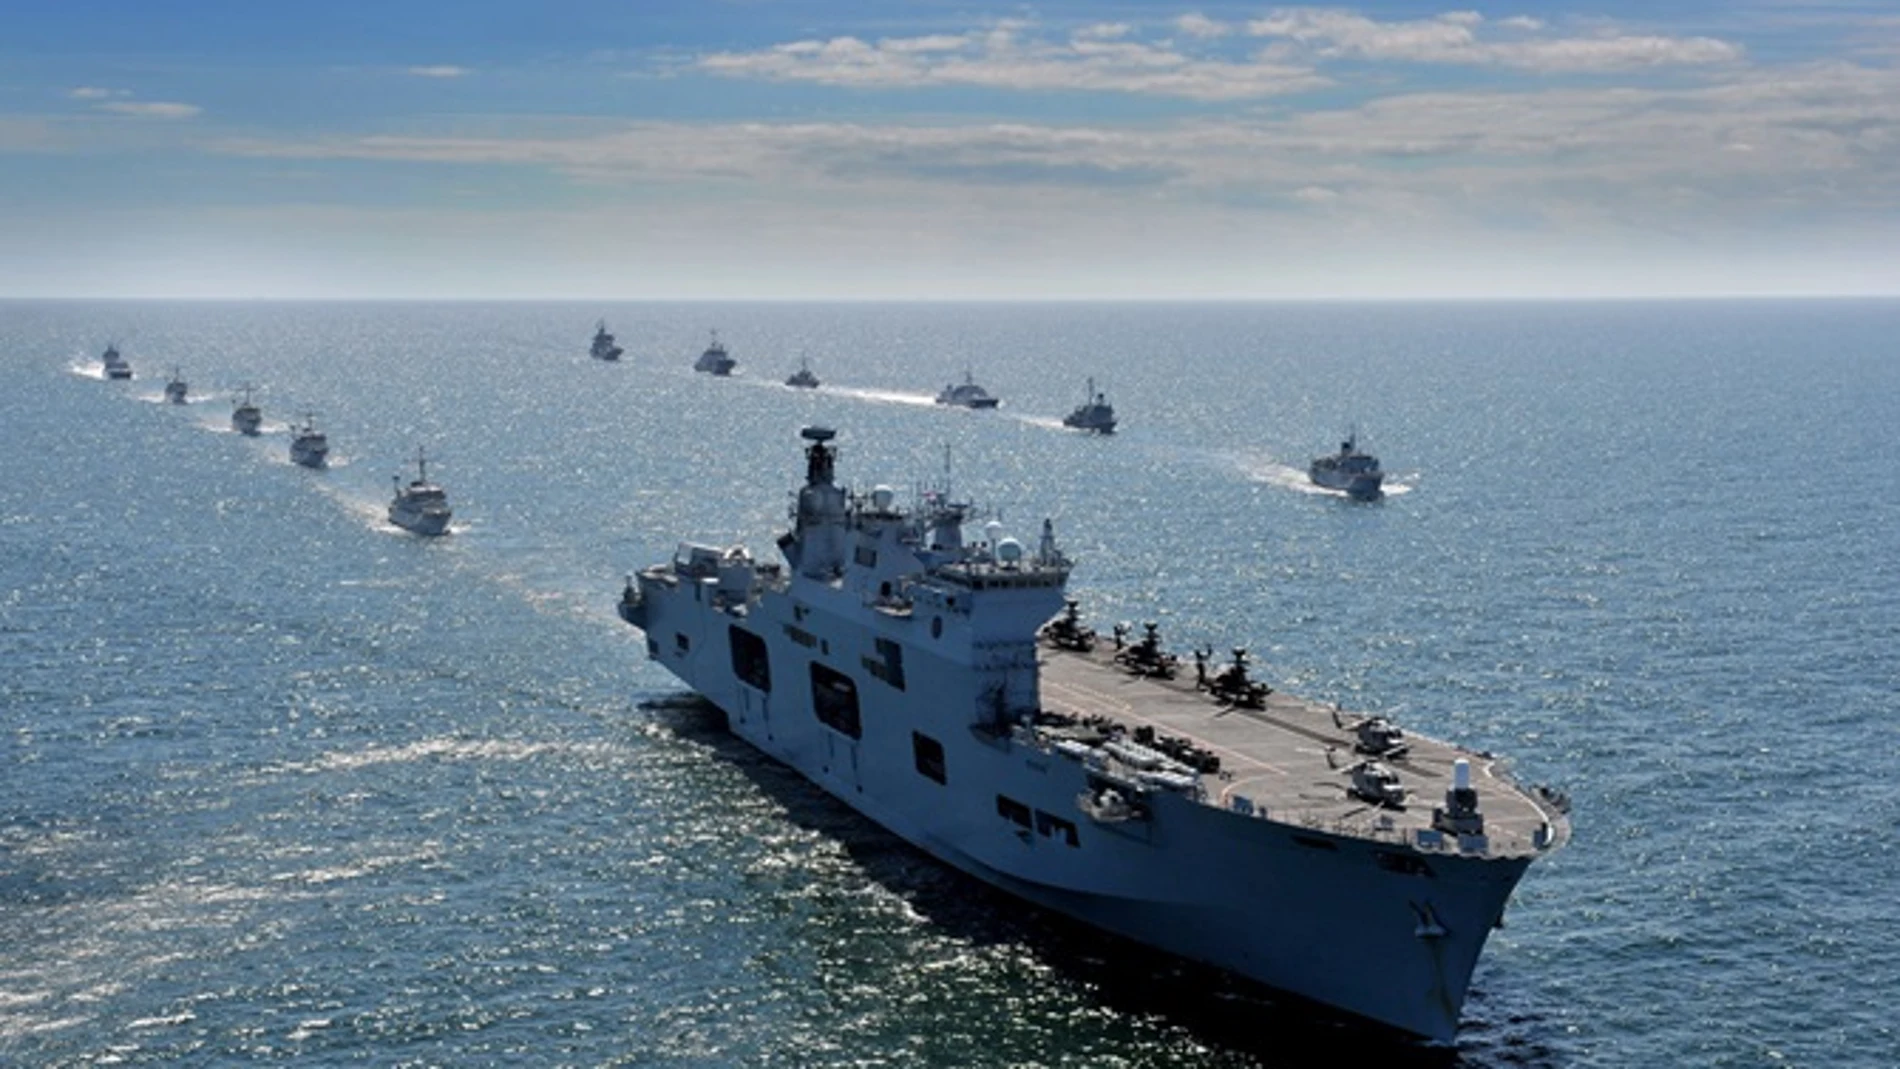 Imagen del HMS Ocean junto a otros buques de la Royal Navy británica